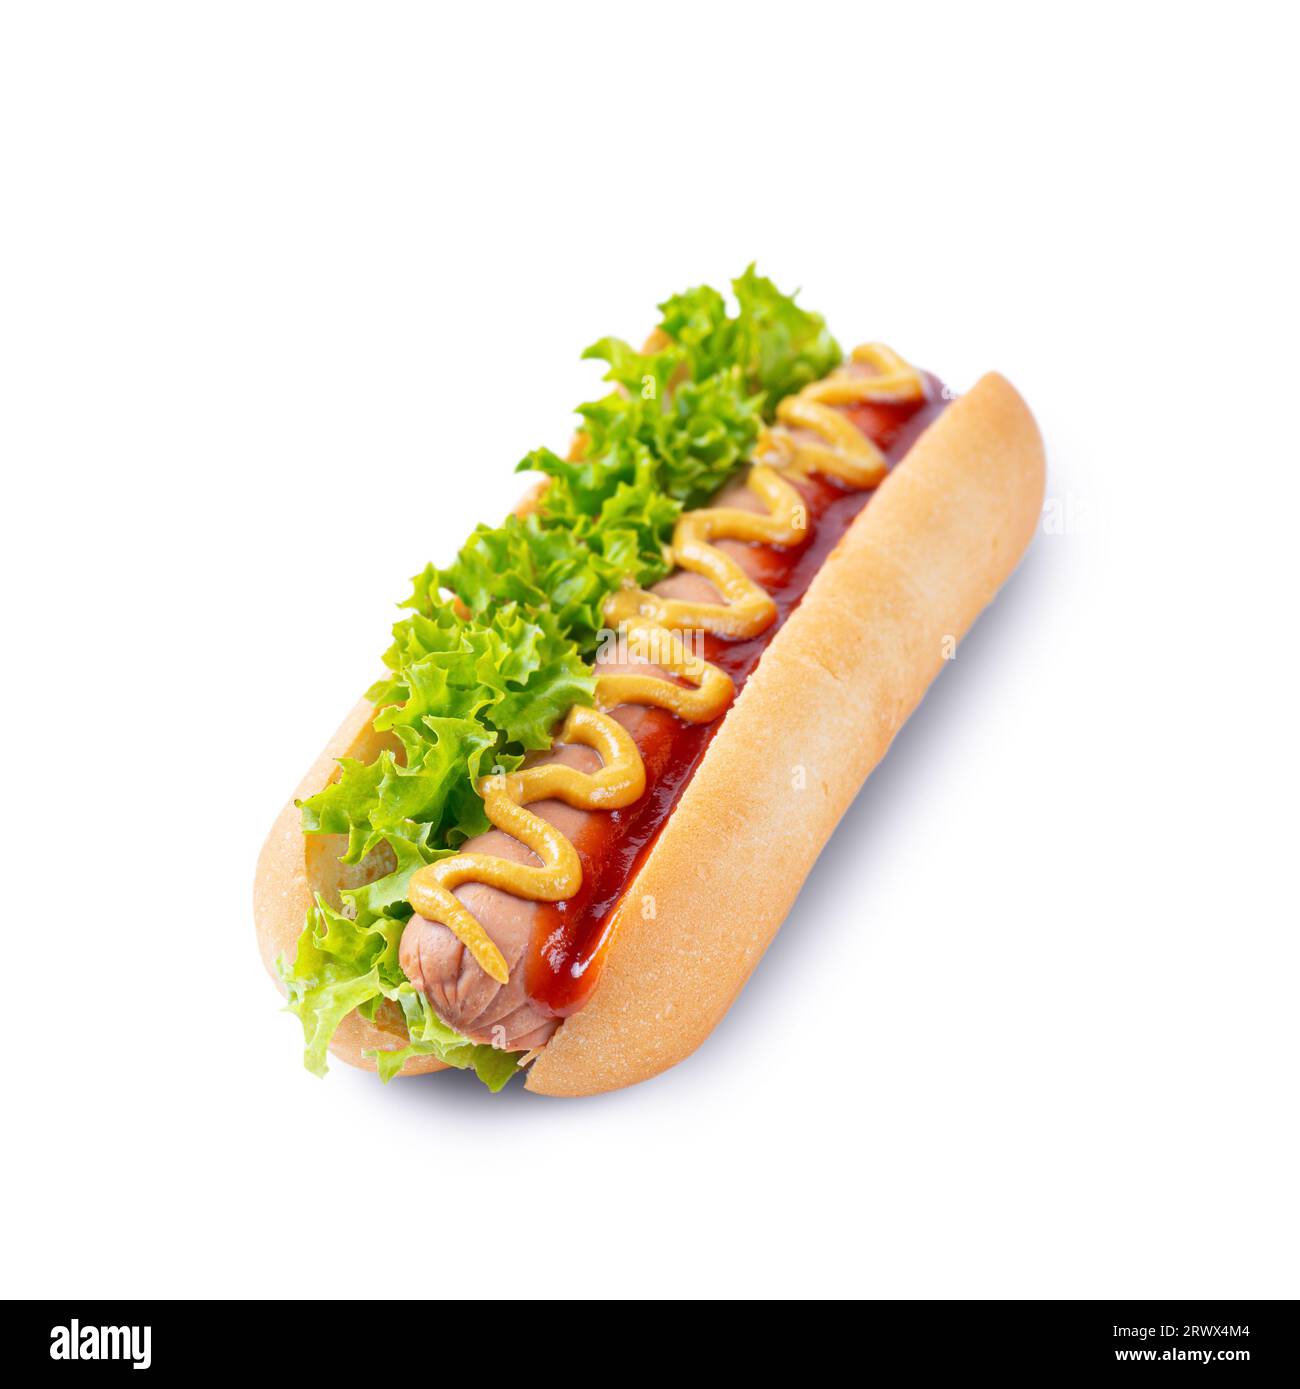 Hot Dog maison avec moutarde jaune, ketchup, tomate et feuilles de salade fraîches isolées sur fond blanc. Restauration rapide, cuisine de rue, cuisine américaine Banque D'Images